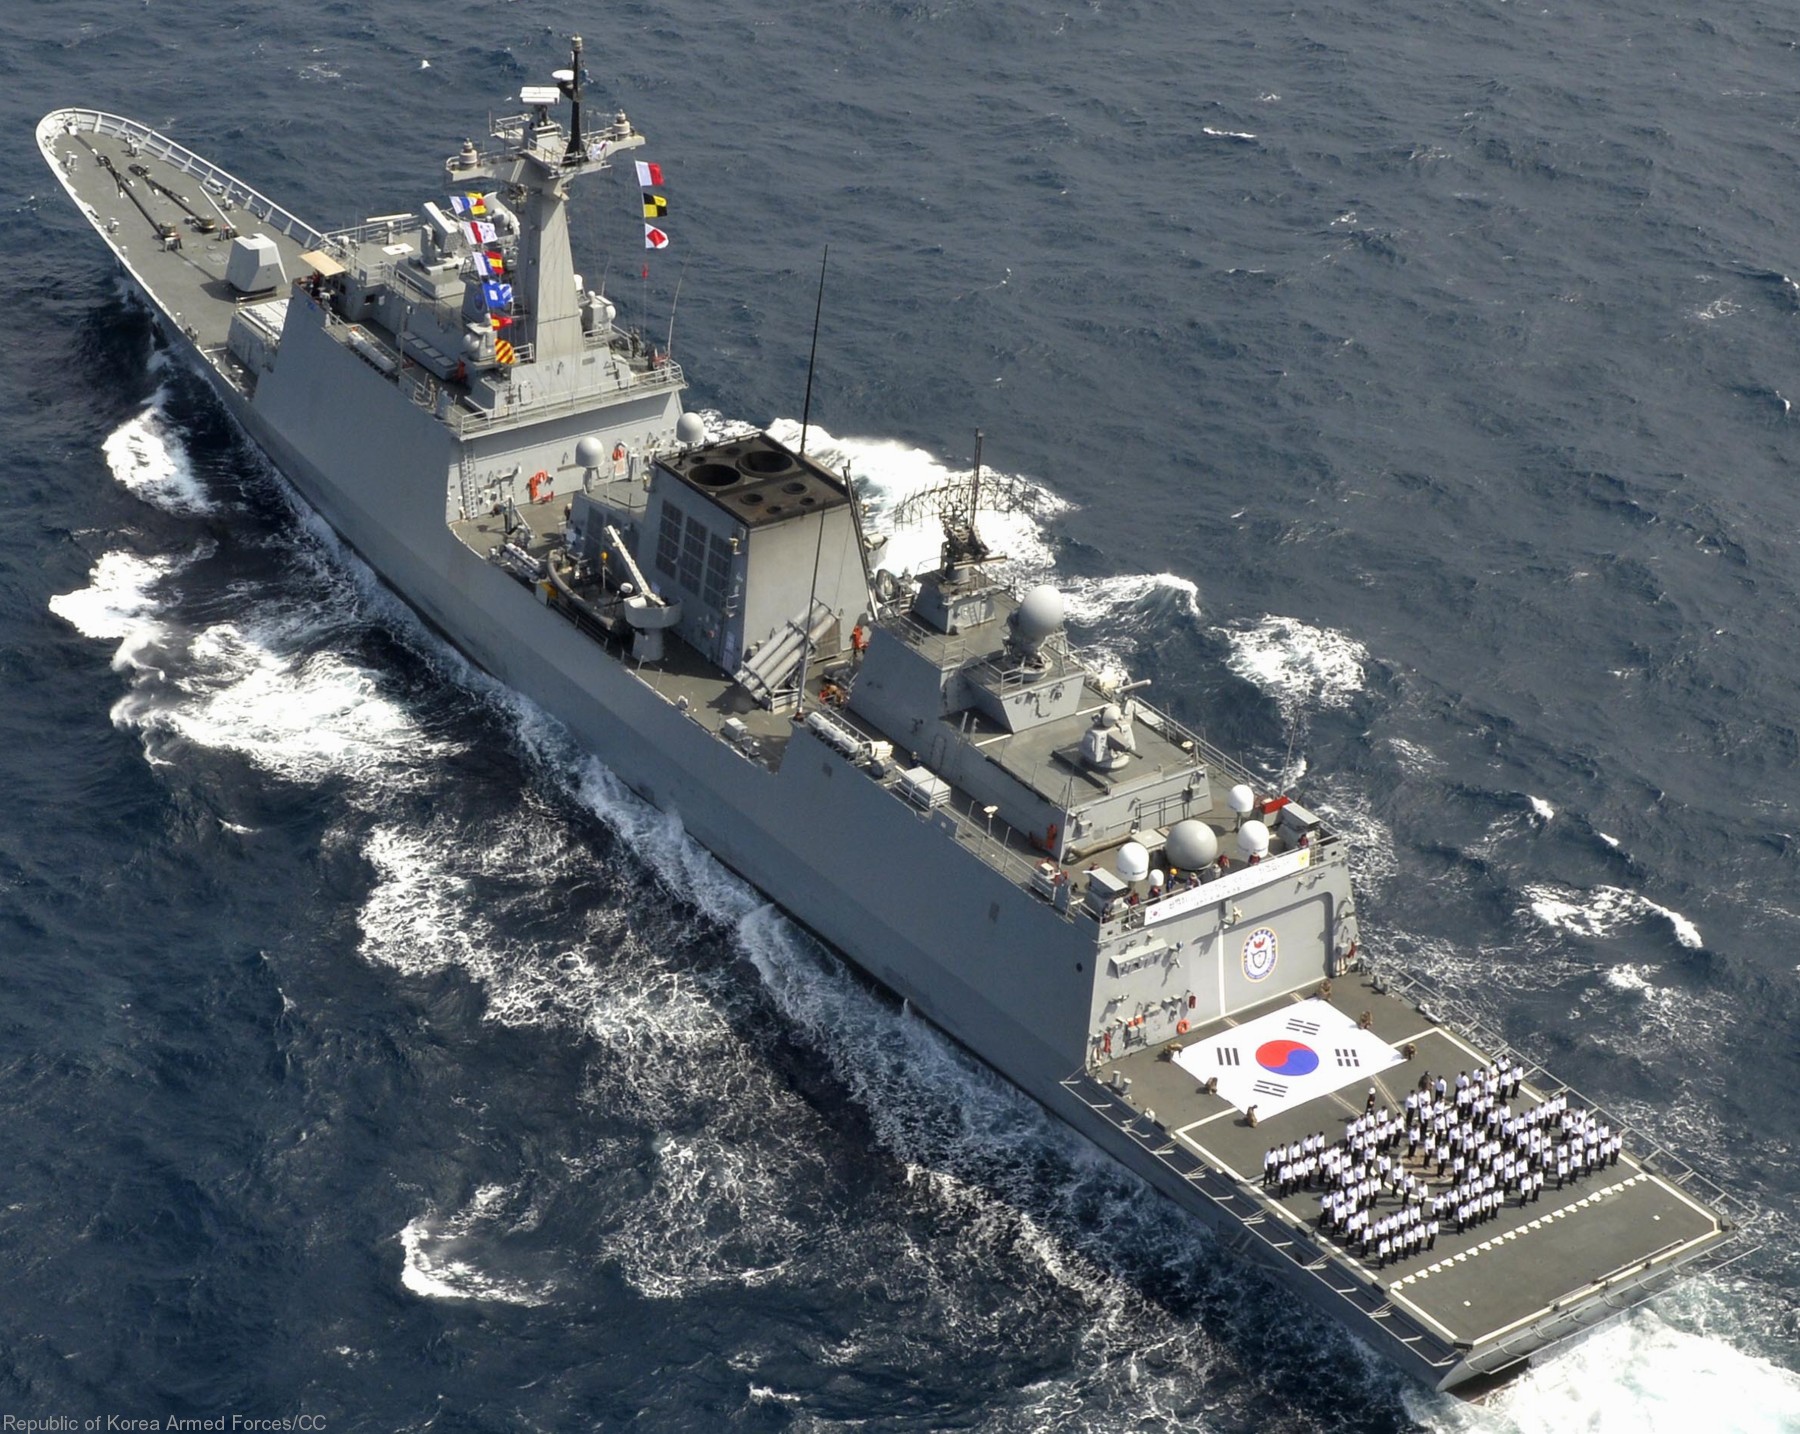 ddh-981 roks choe yeong helicopter destroyer ddh kdx-ii korean navy rokn standard sm-2mr sam harpoon ssm 10